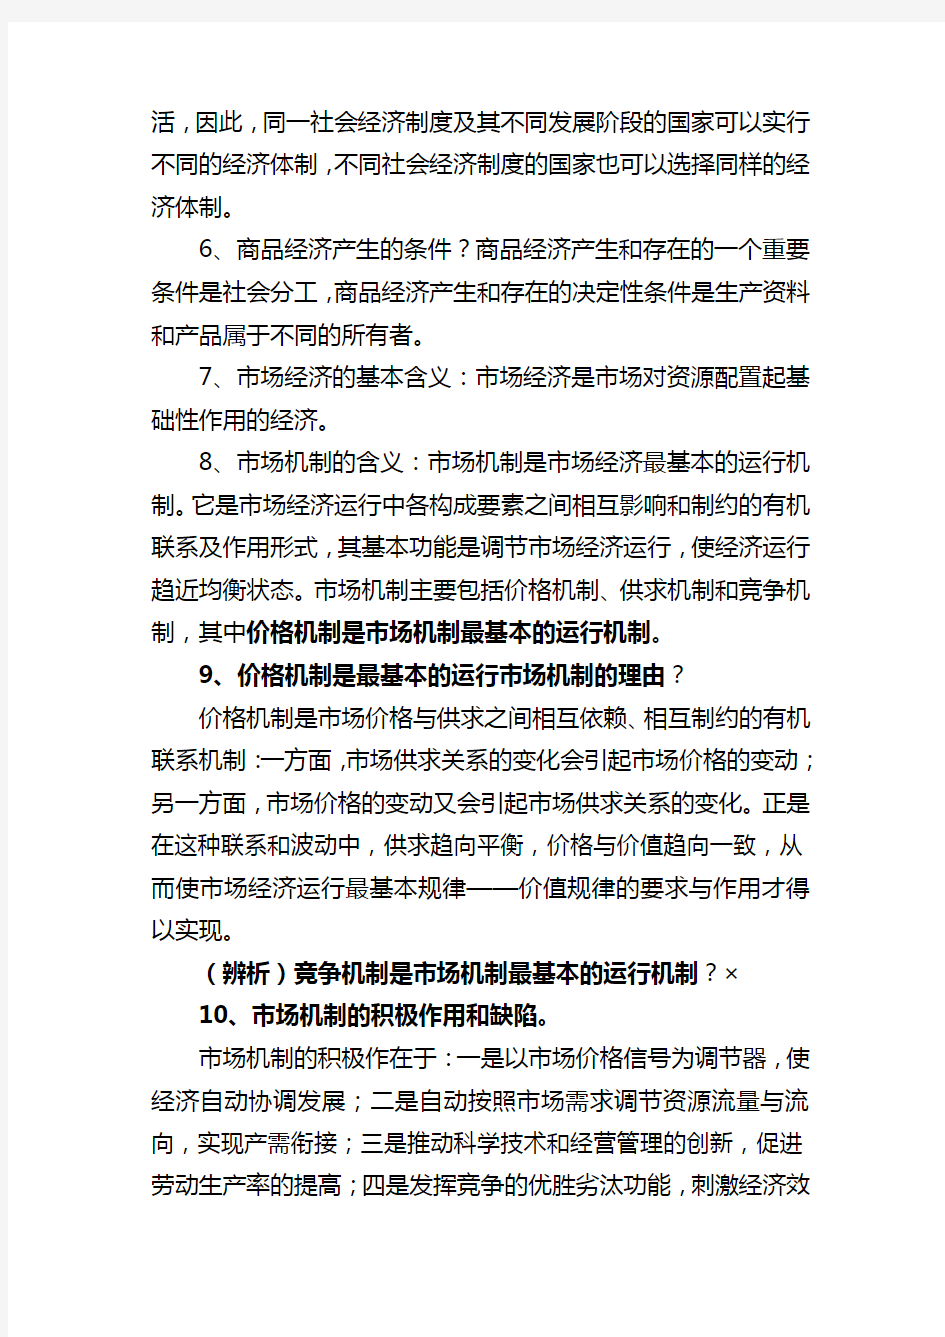 四川省委党校2012年在职研究生入学考试复习资料-社会主义市场经济理论